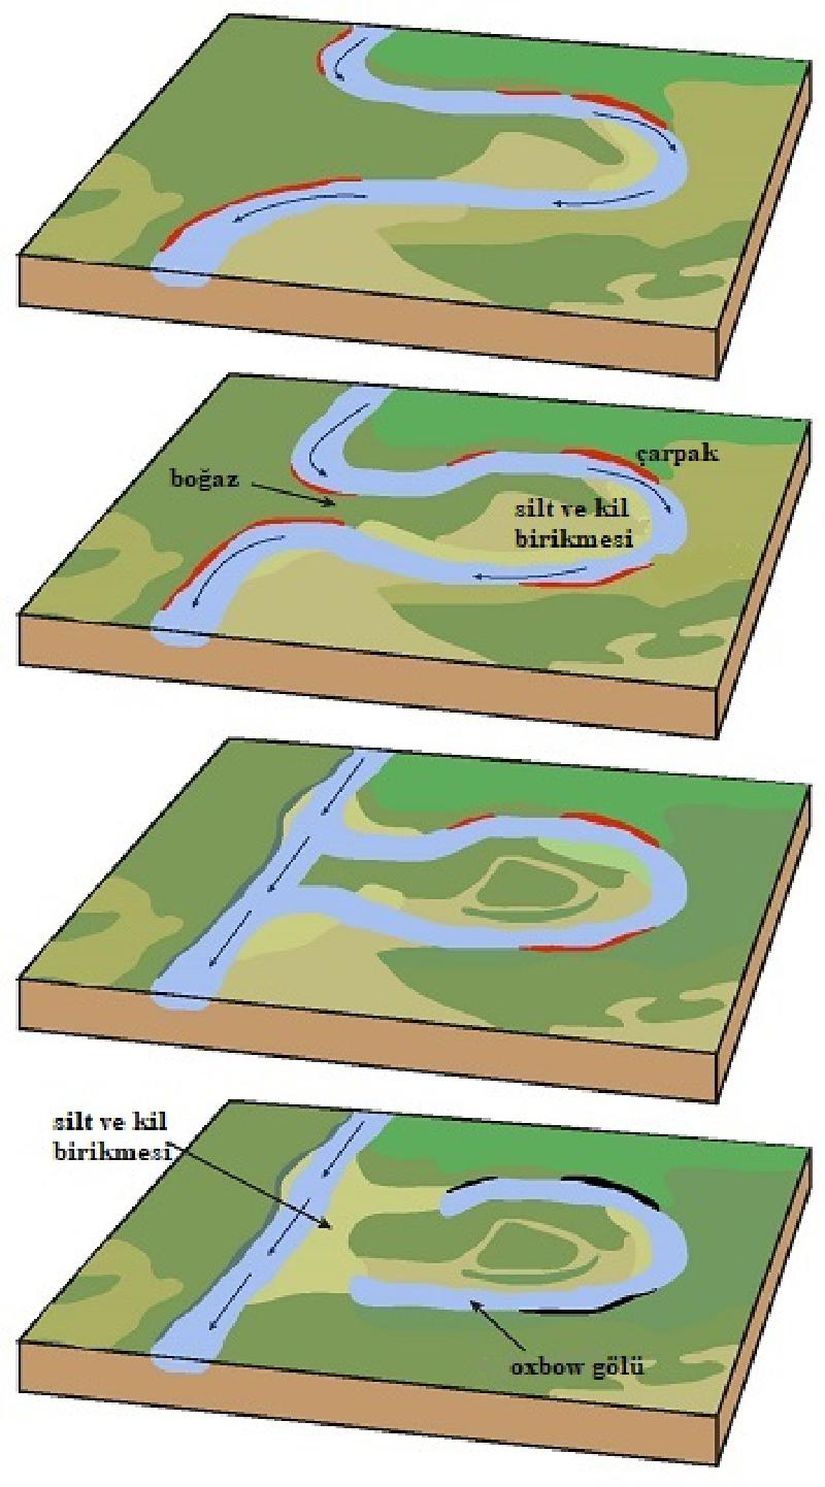 Kırmızı alanlar çarpakları göstermektedir. Çarpakların aşınması sonucu nehir daha da kıvrımlaşarak birbirine yaklaşır ve oxbow gölü oluşur.